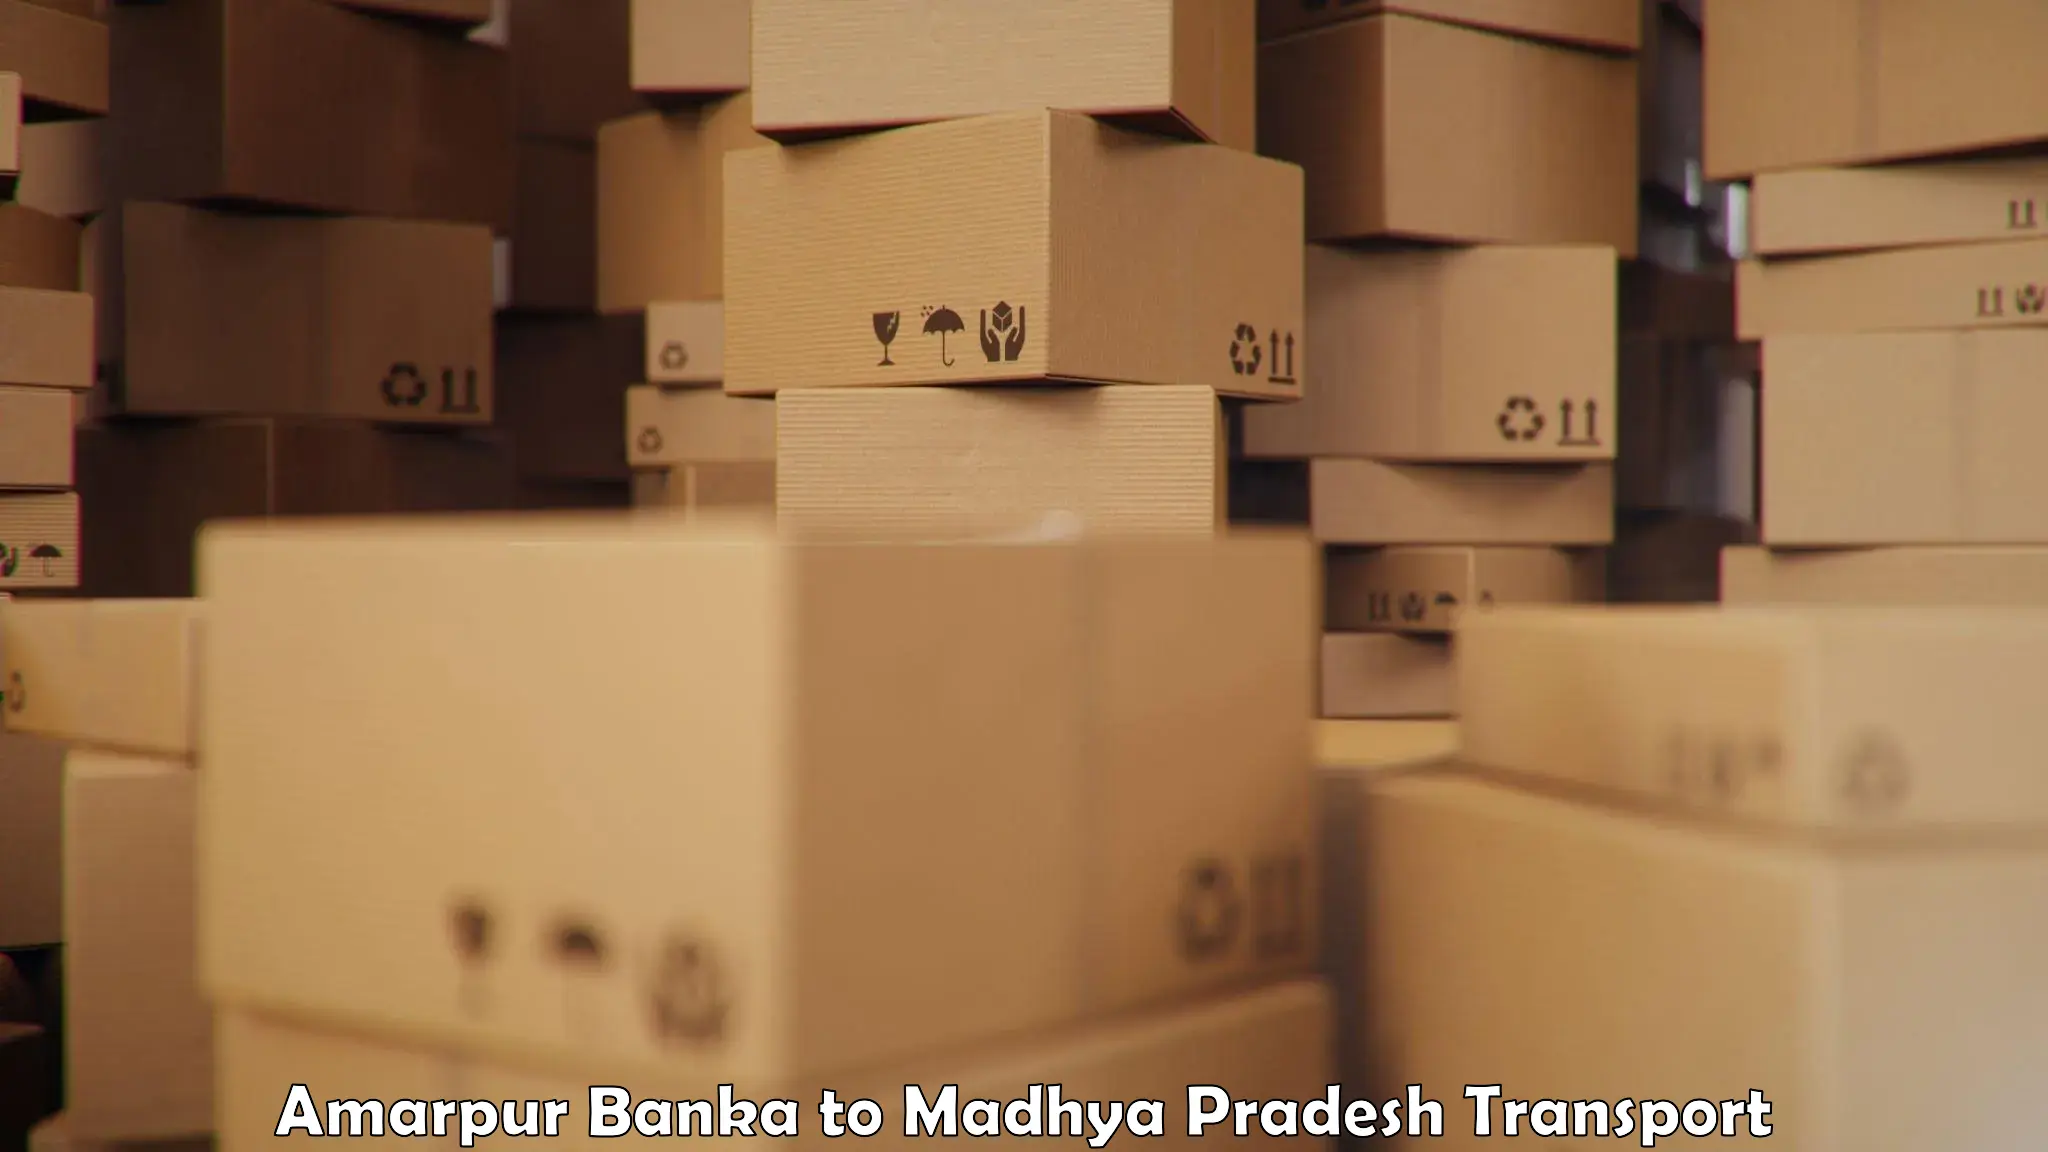 Container transport service Amarpur Banka to Garh Rewa